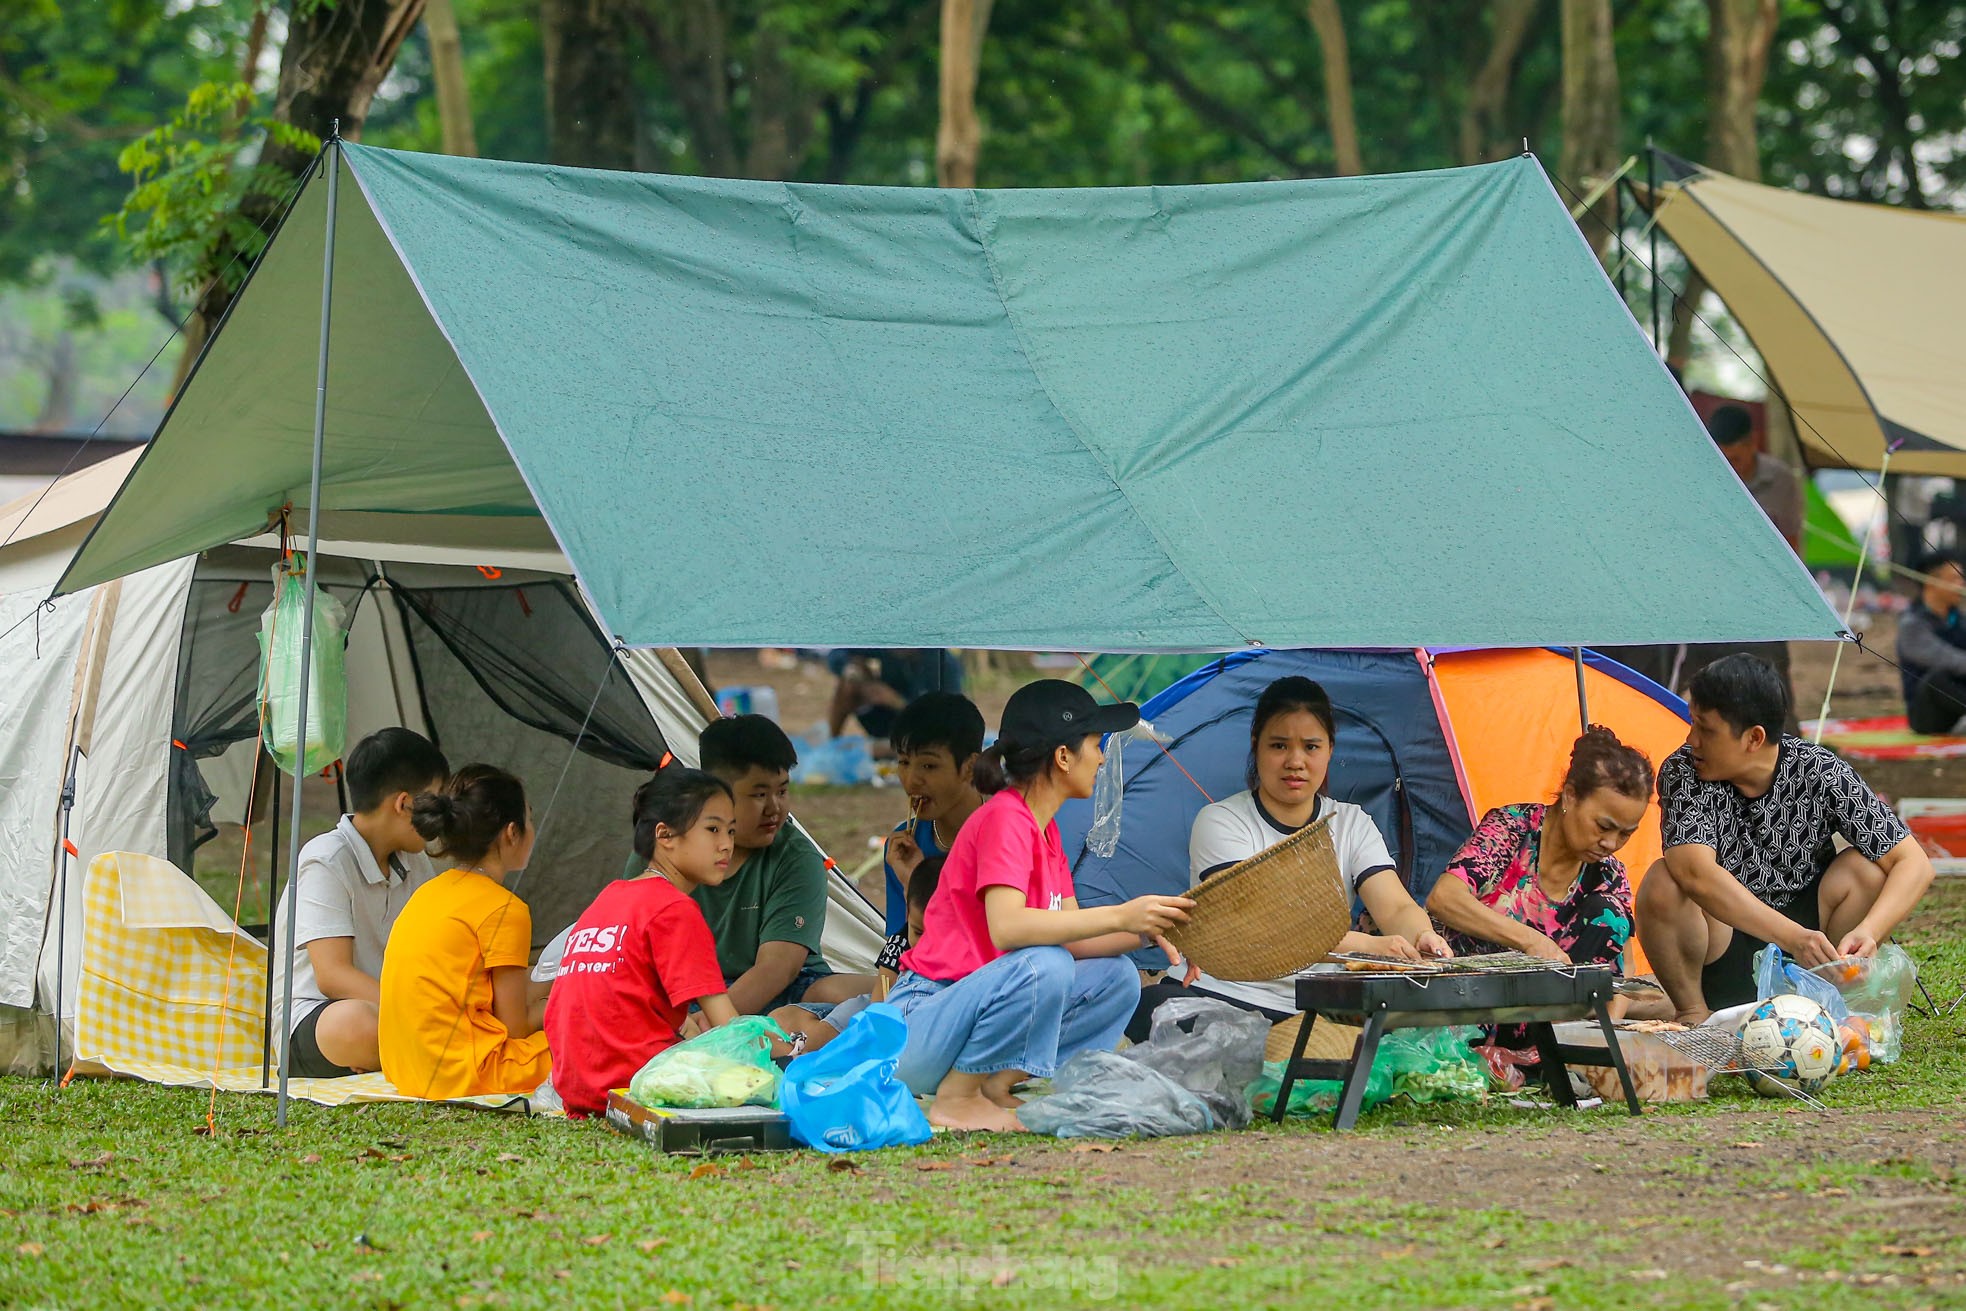 Hàng nghìn người đổ về công viên Yên Sở cắm trại trong ngày nghỉ lễ - Ảnh 15.